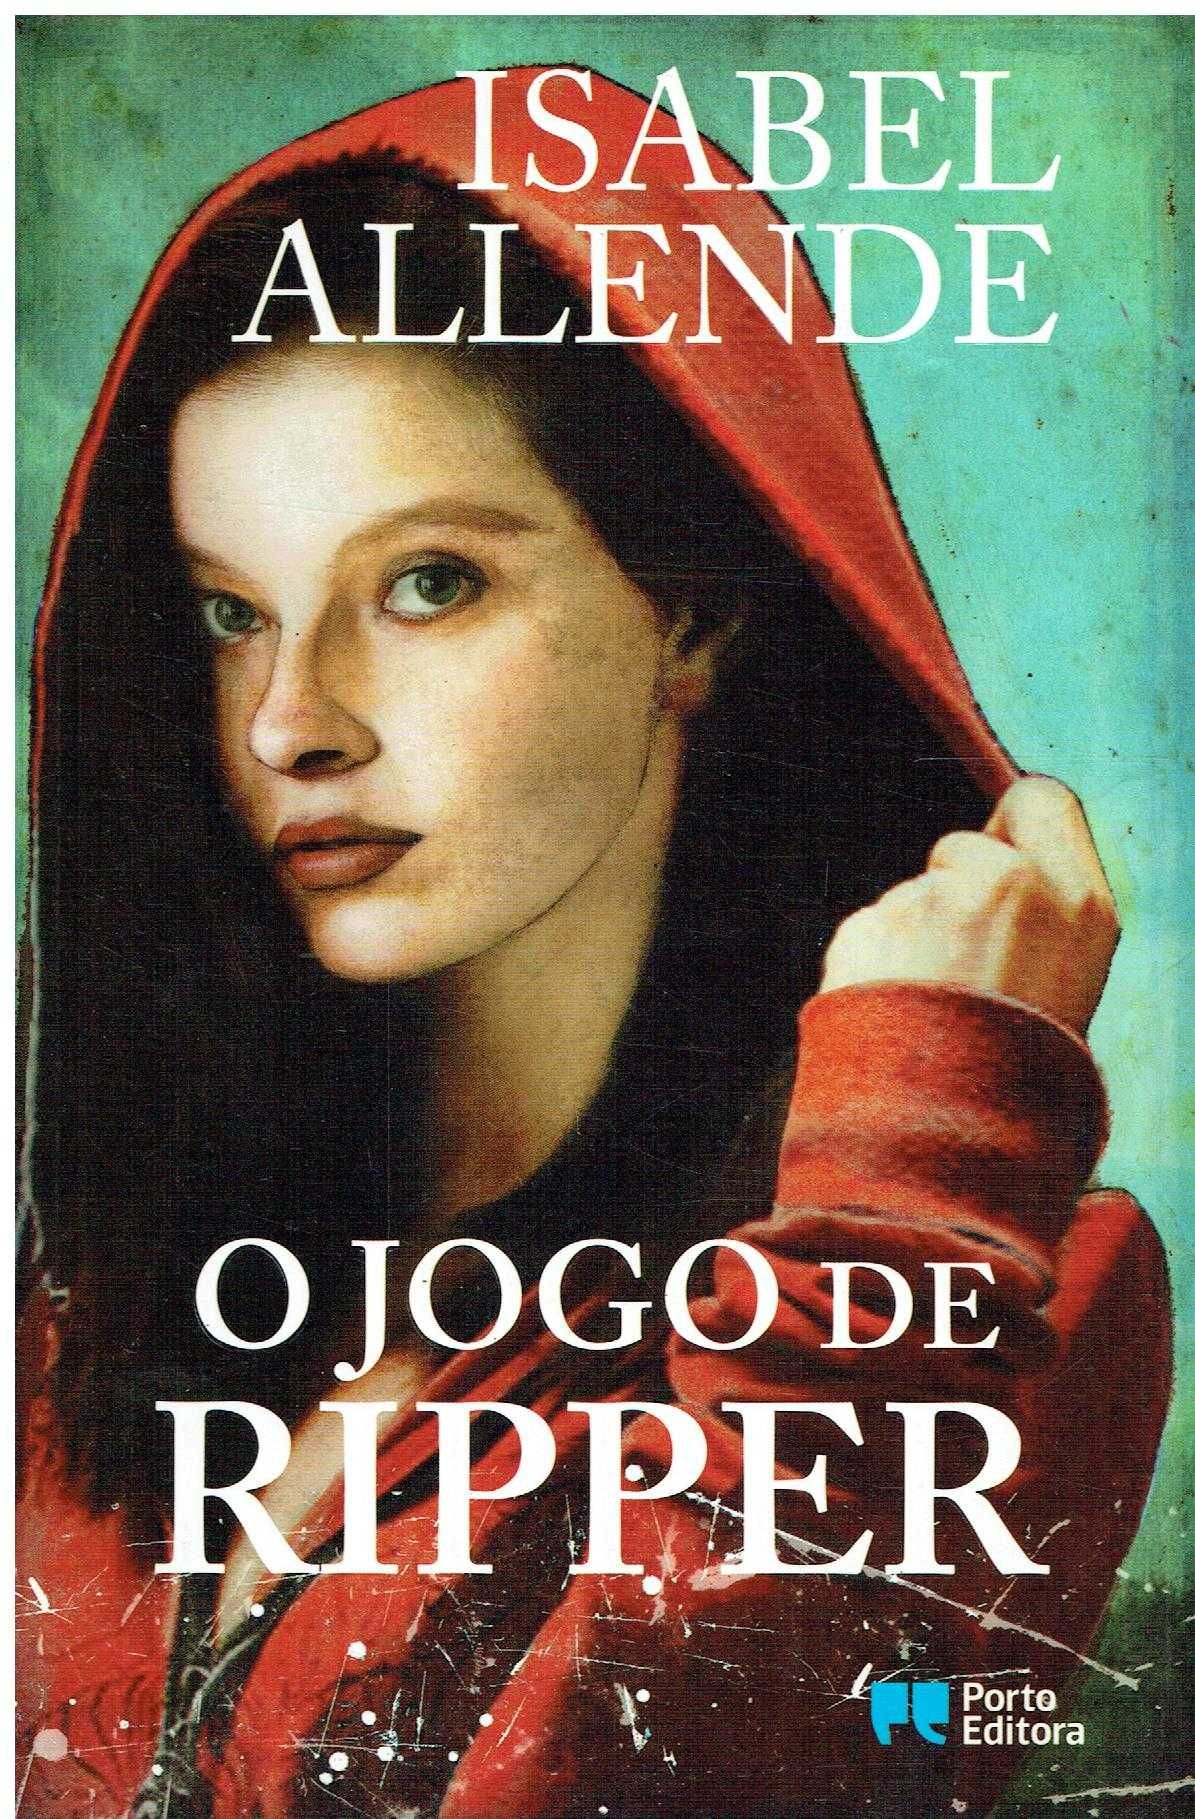 1563

O jogo de Ripper
de Isabel Allende